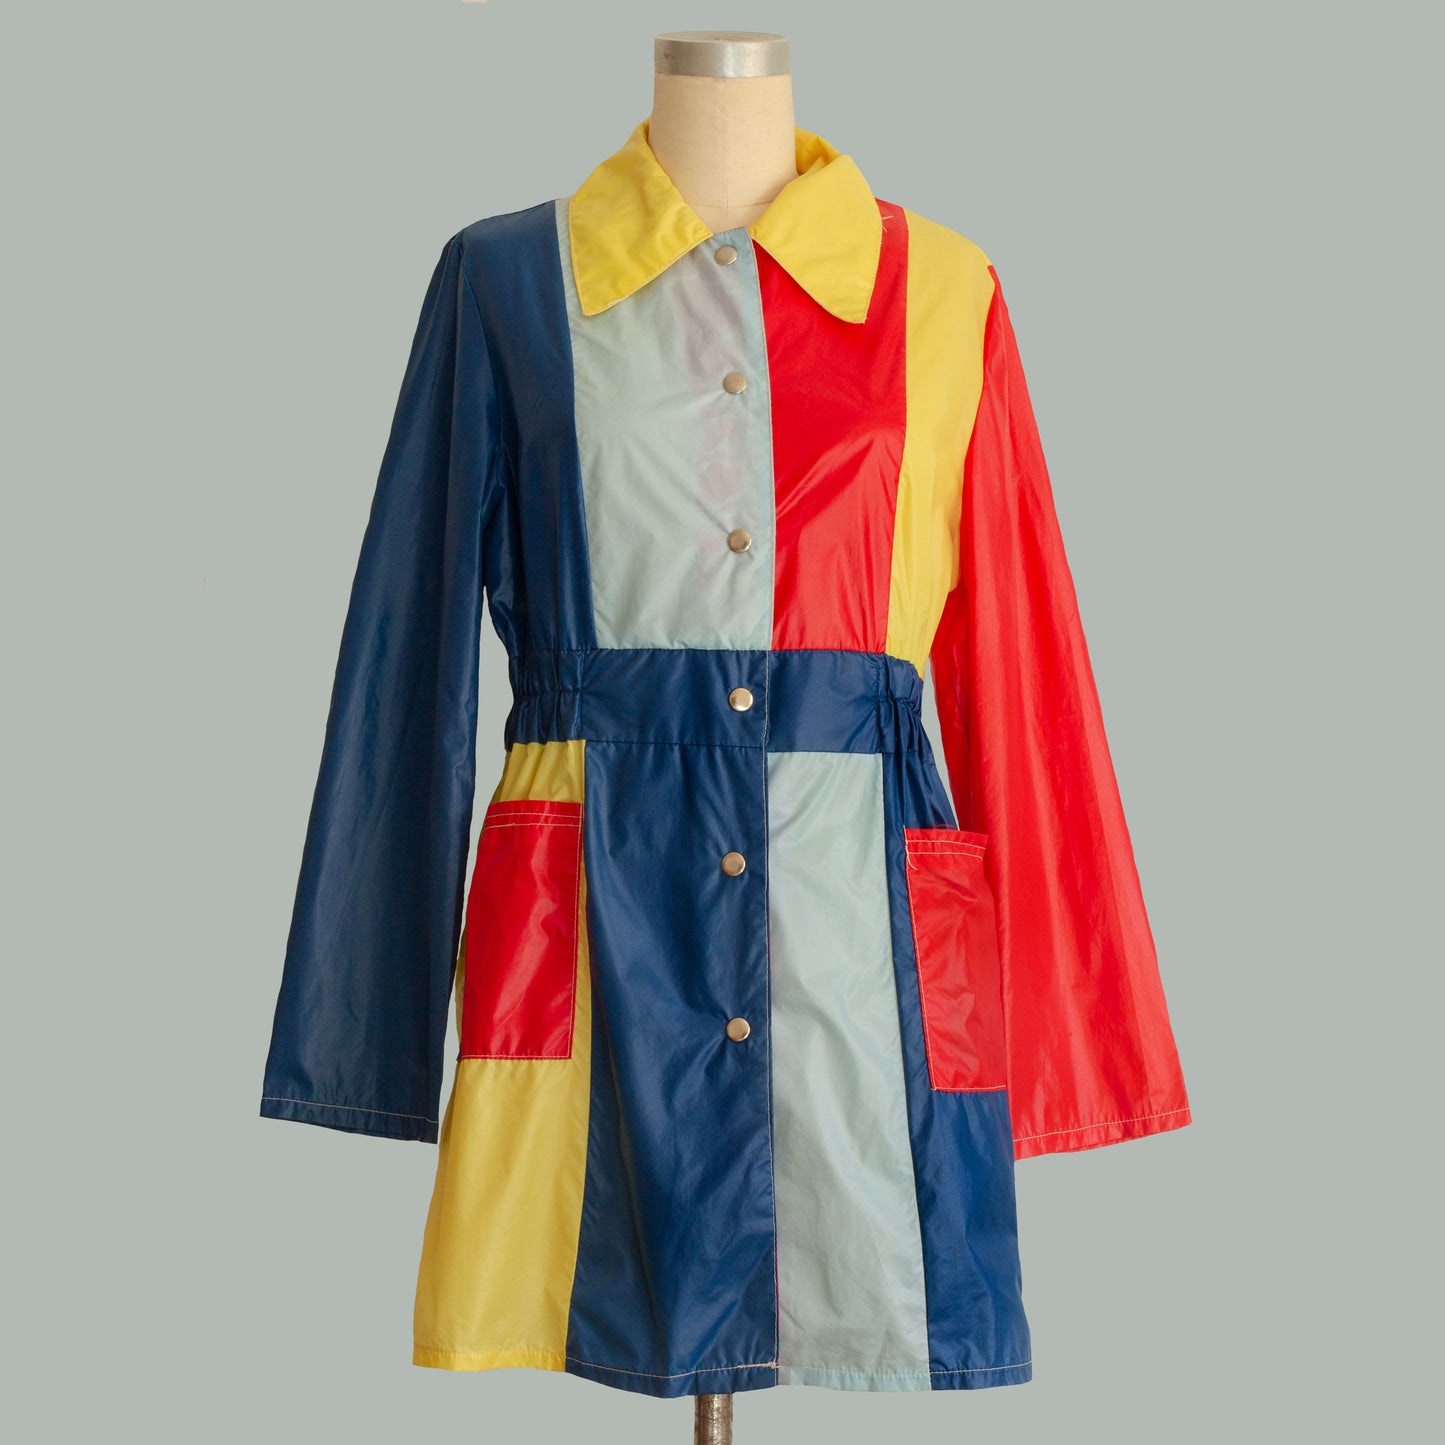 Vintage 1960s Mod Color Block Raincoat